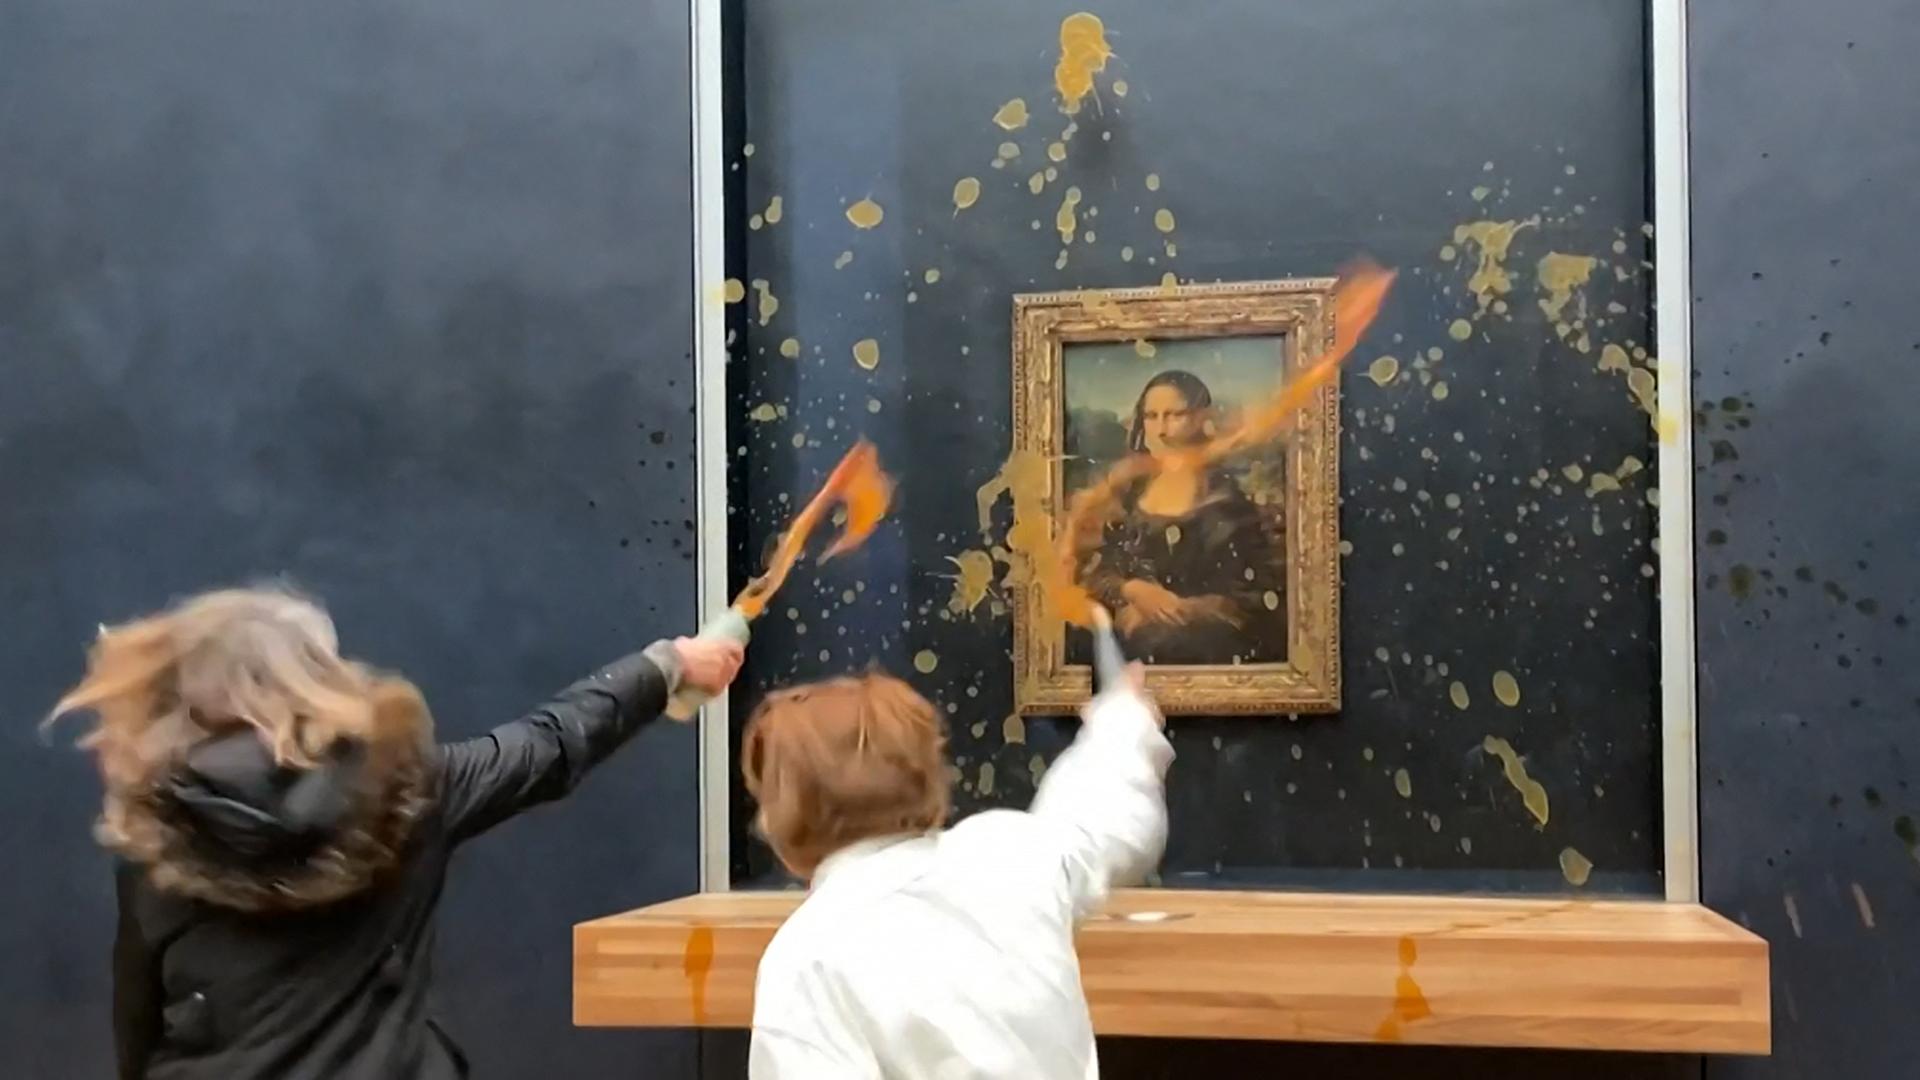 Zwei Klimaaktivisten schleudern Suppe auf die Mona Lisa im Louvre.